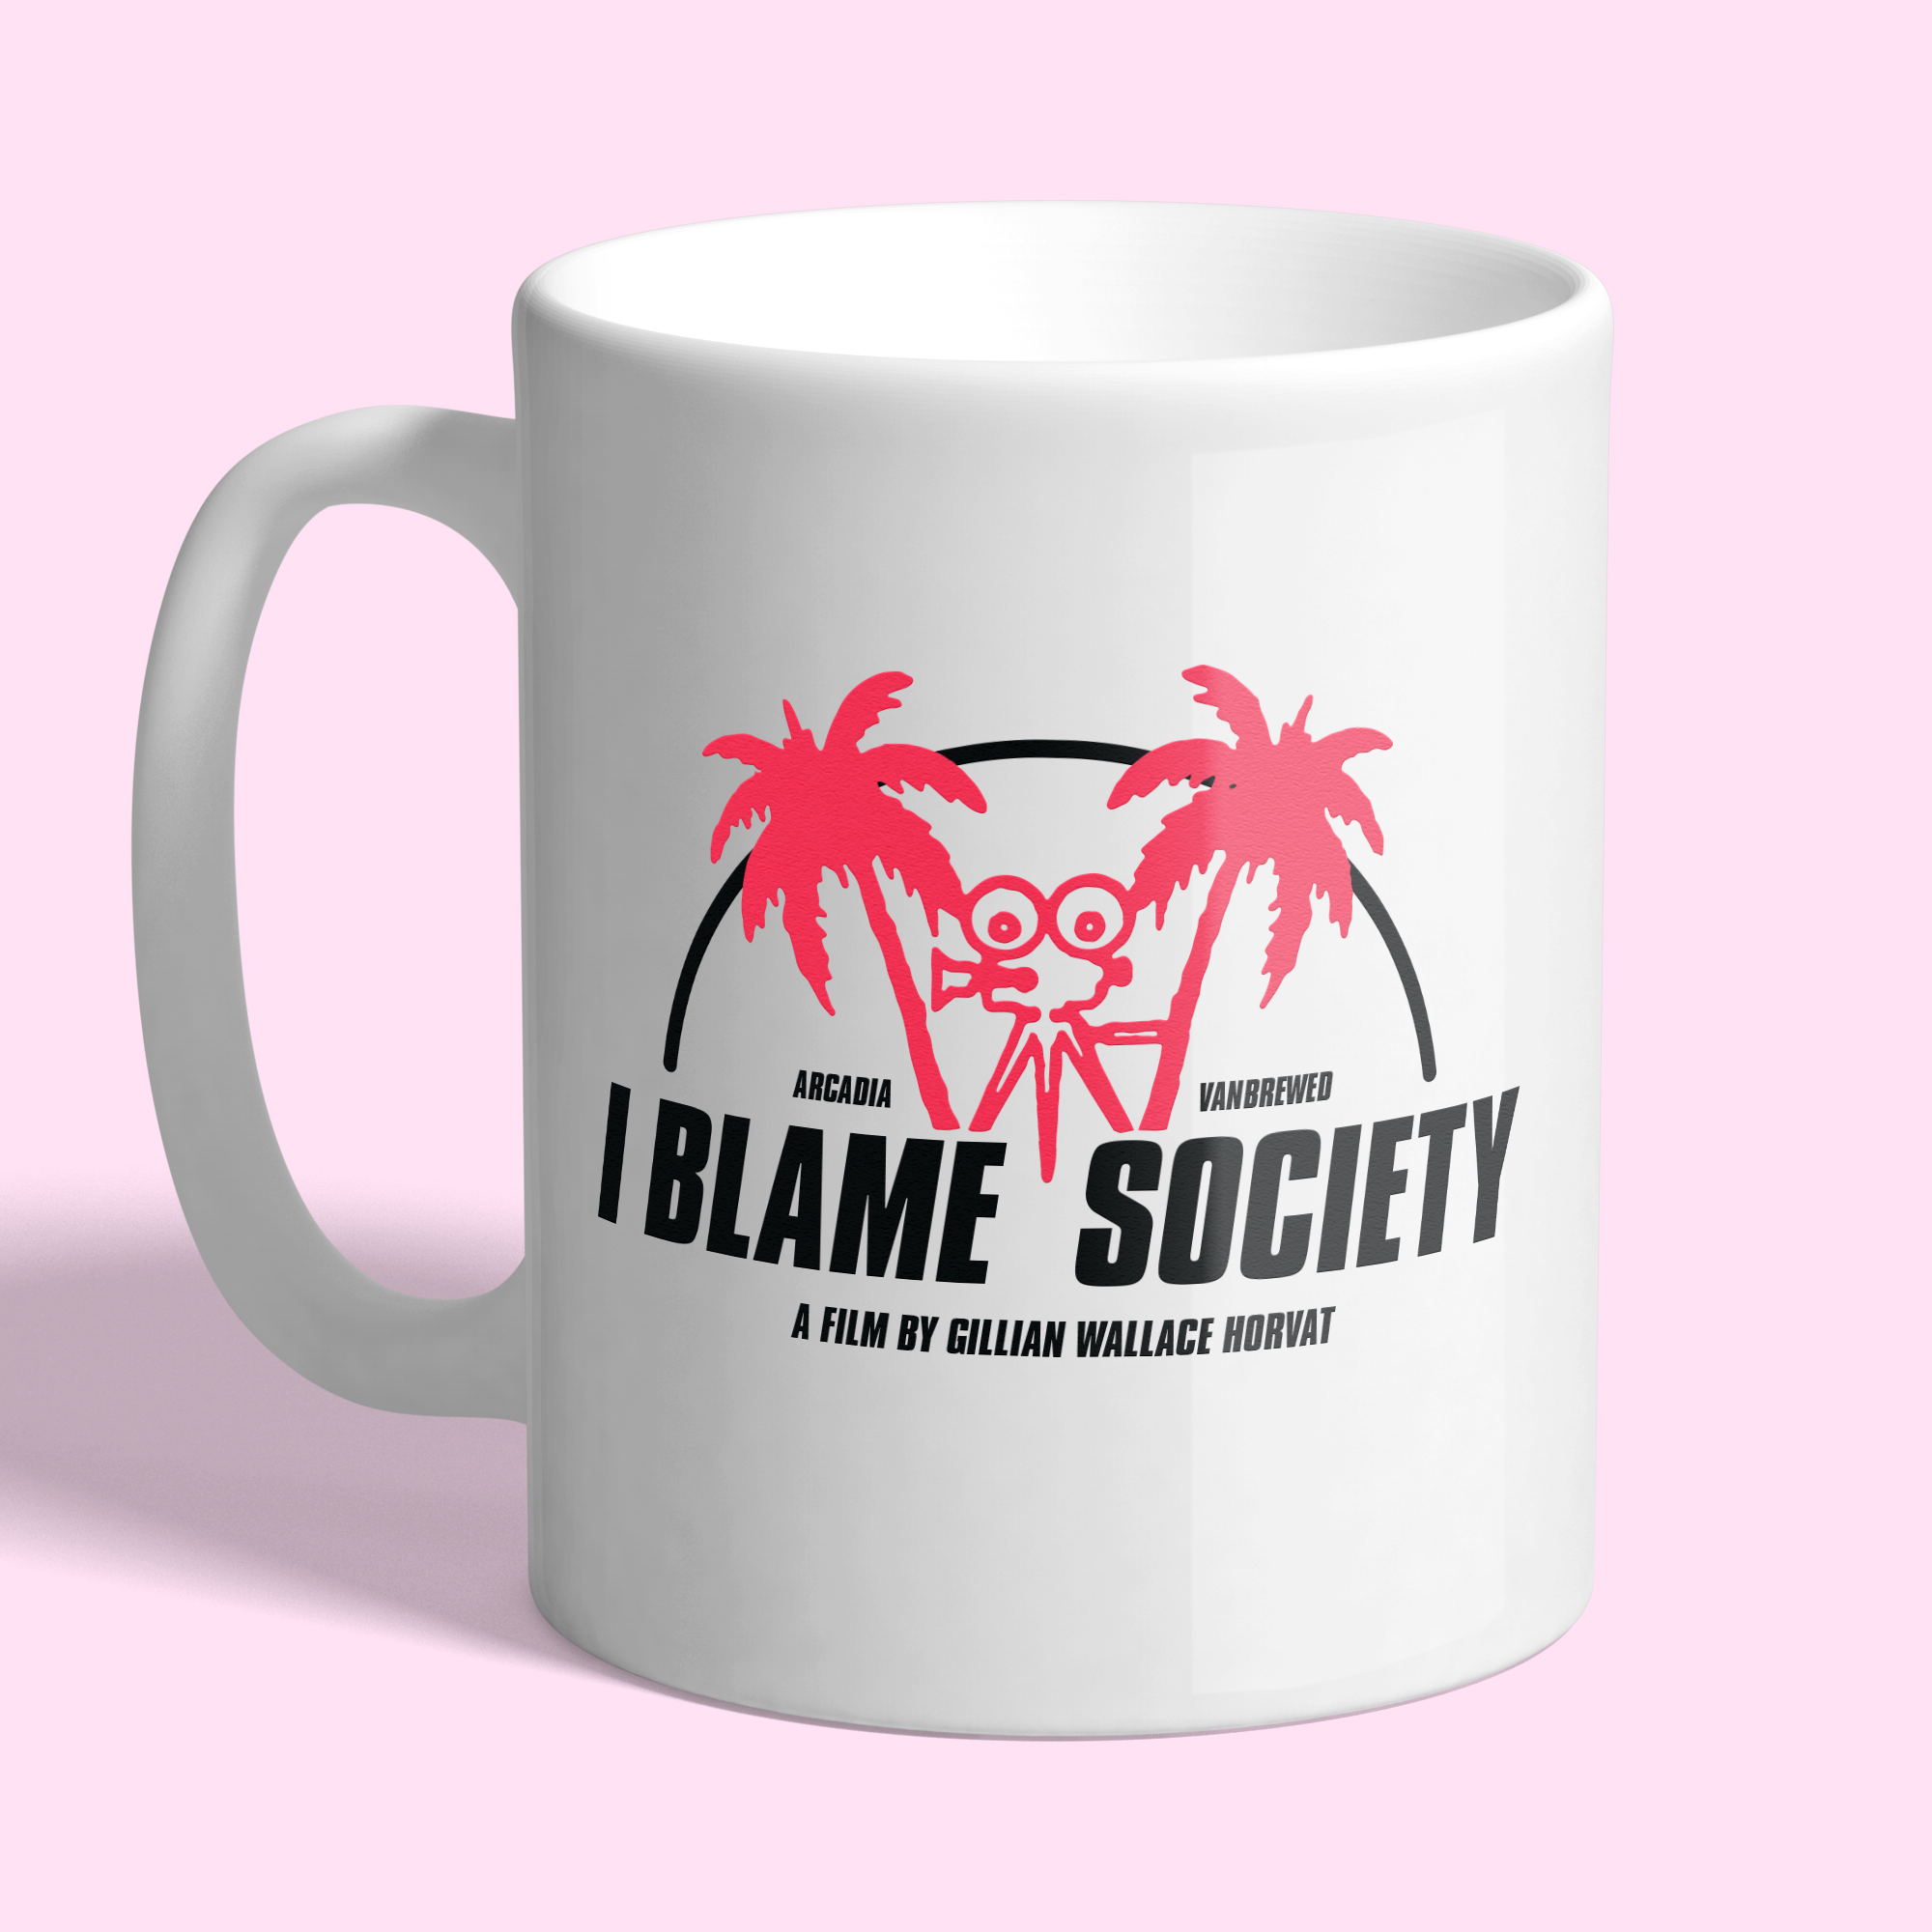 I Blame Society mug